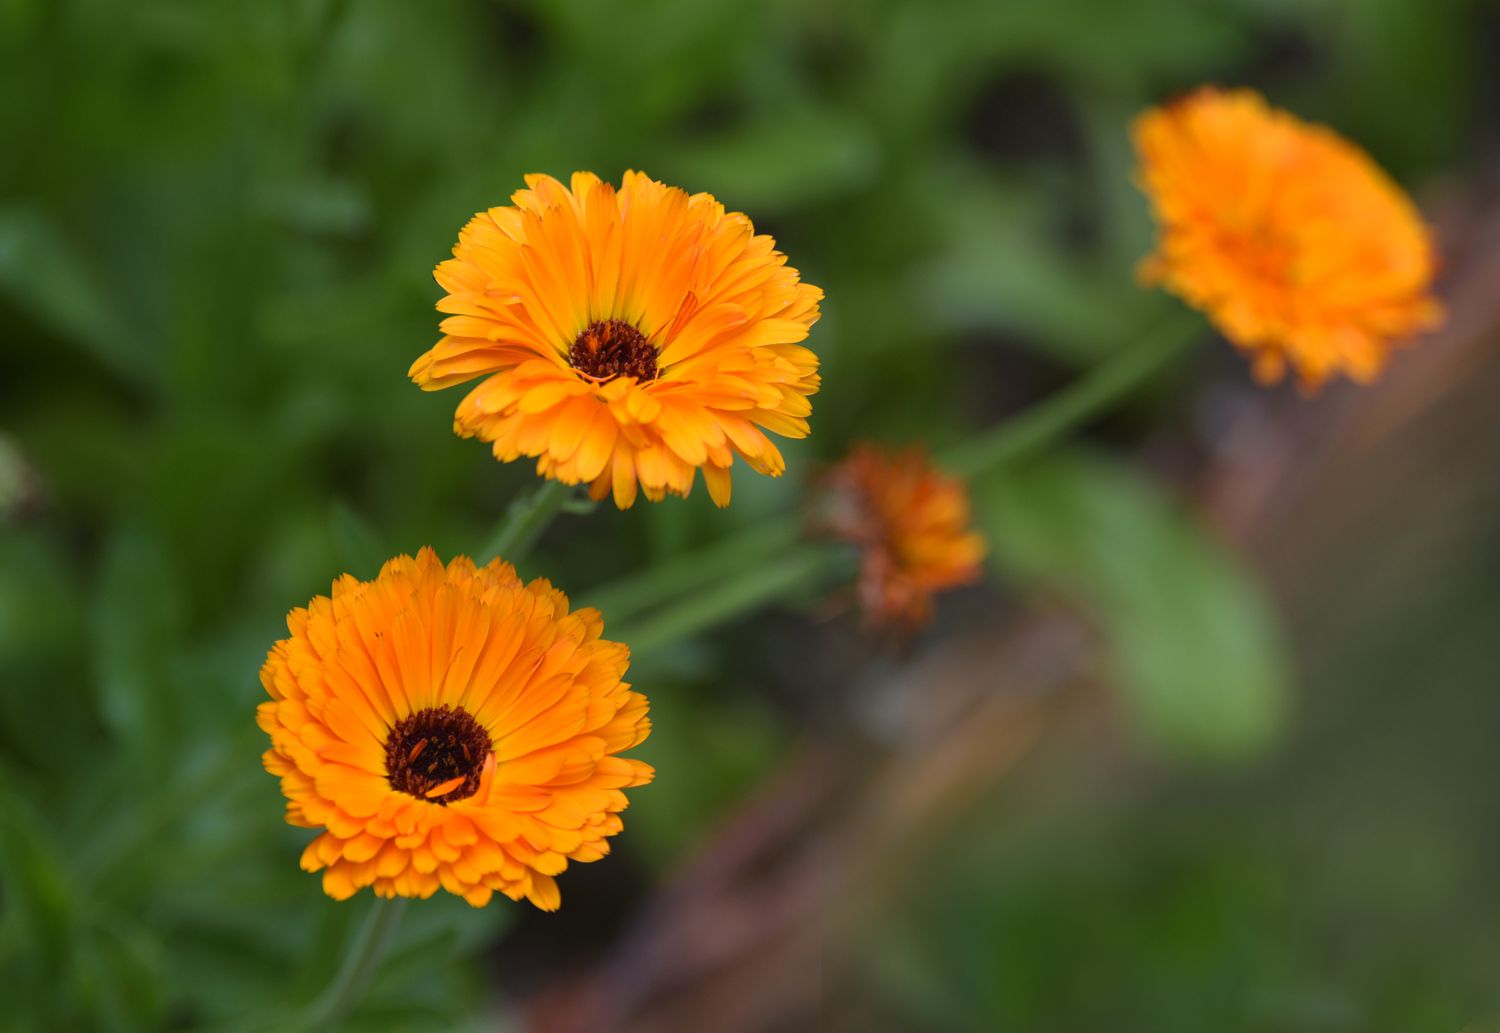 Ringelblumenpflanze mit orangefarbenen gekräuselten und strahlenden Blütenblättern mit brauner Mitte